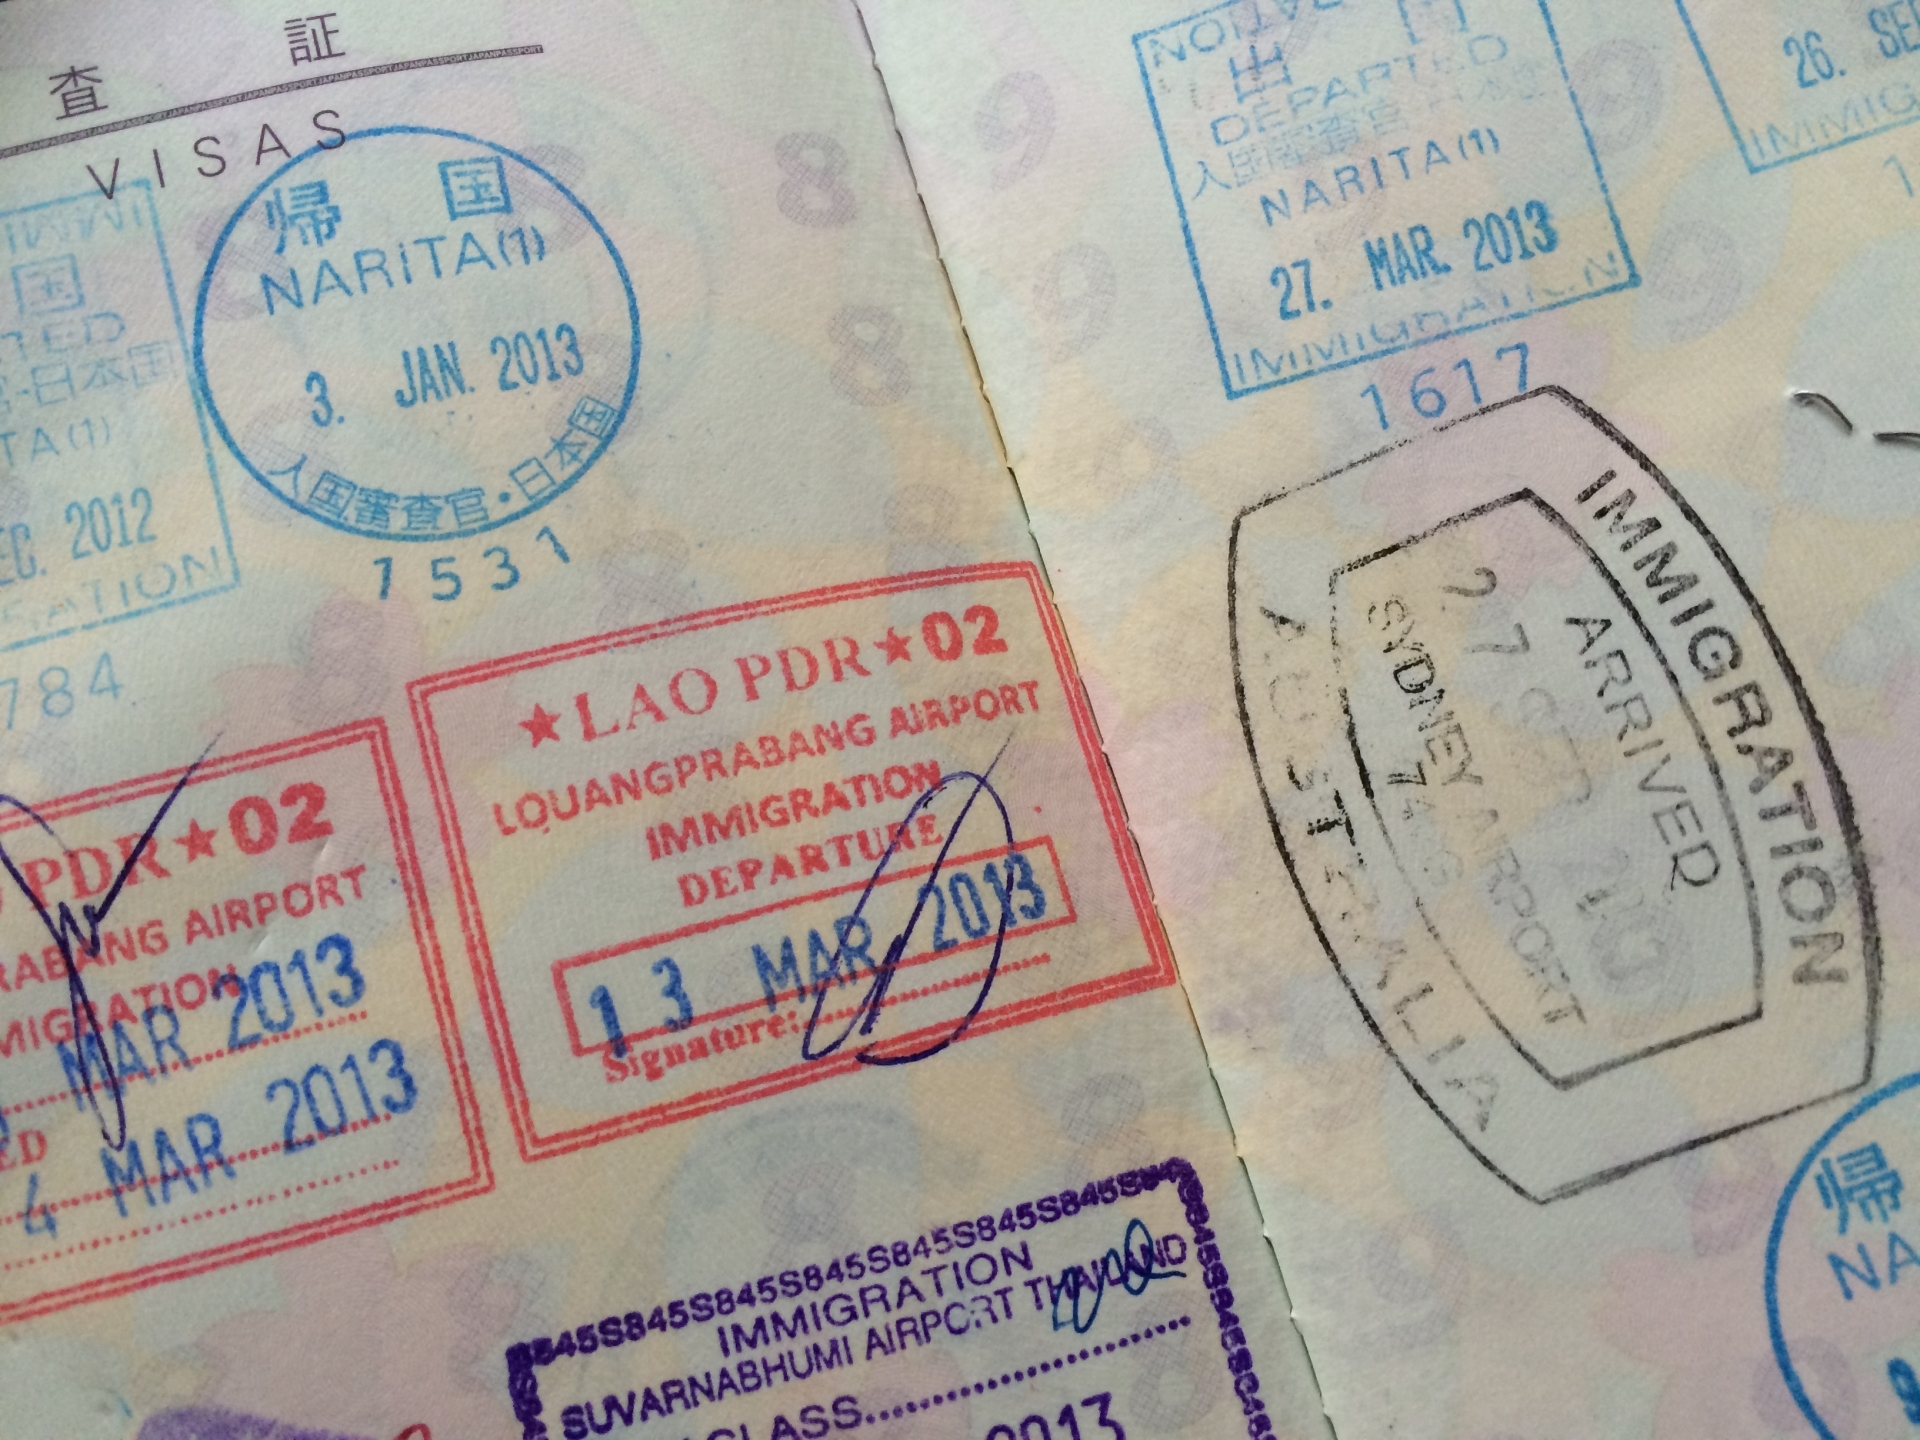 パスポートのサインは フルネームに限らずなんでも良かった Intelivia